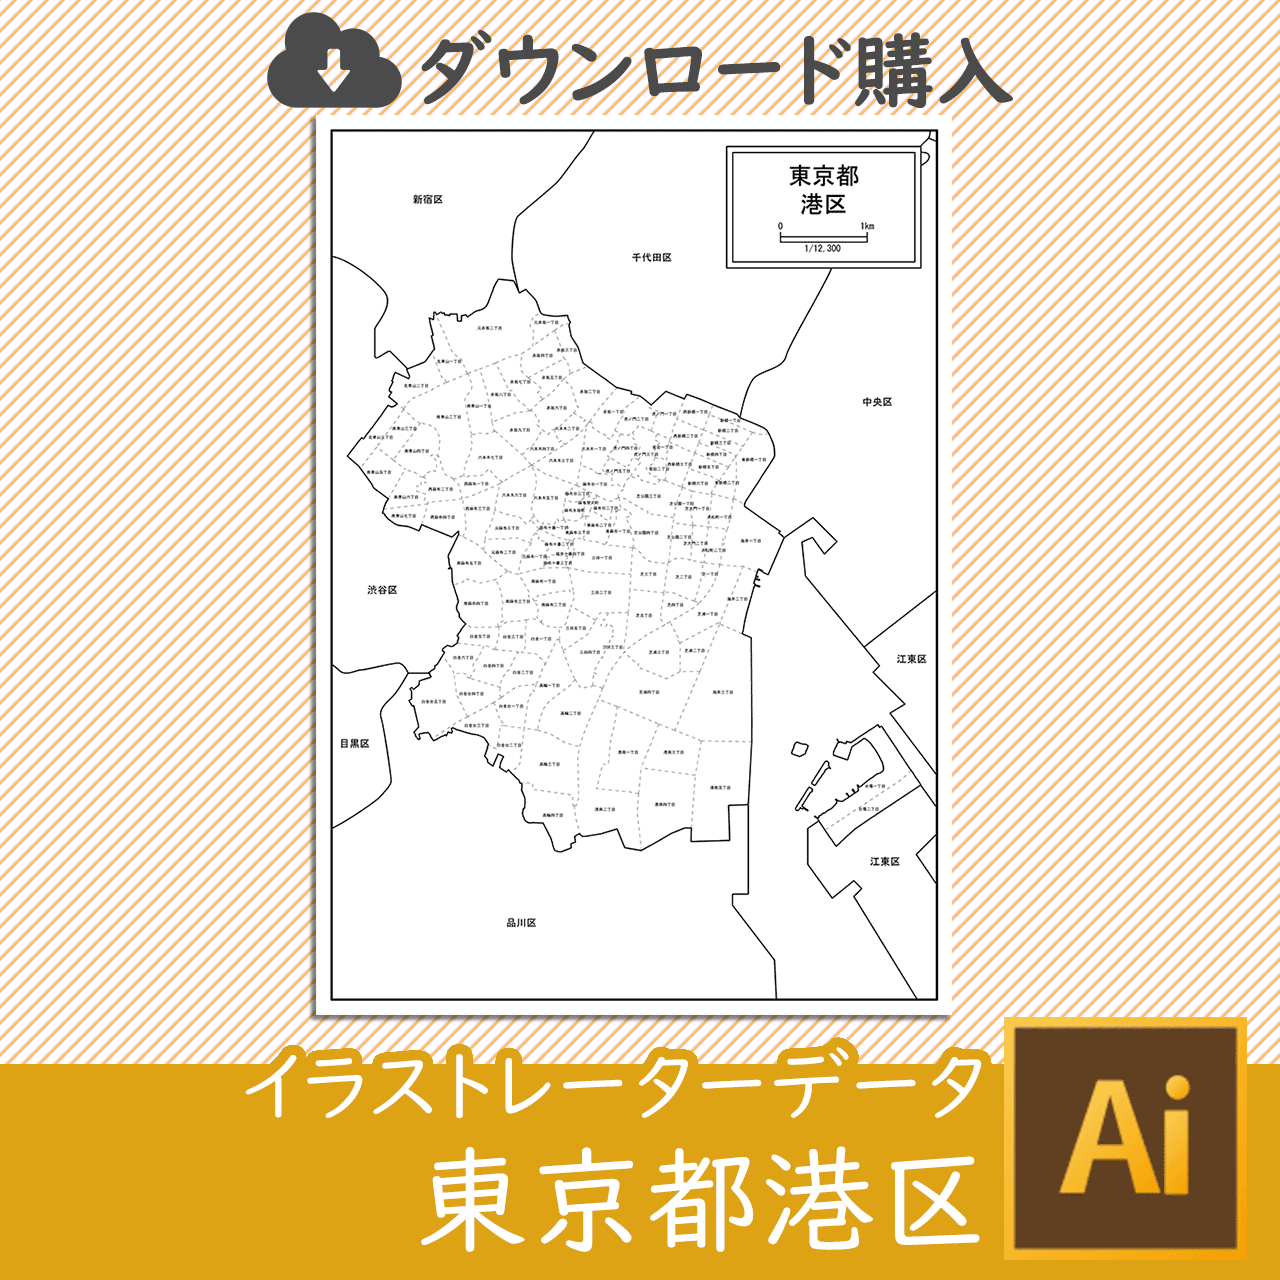 東京都港区のaiデータのサムネイル画像